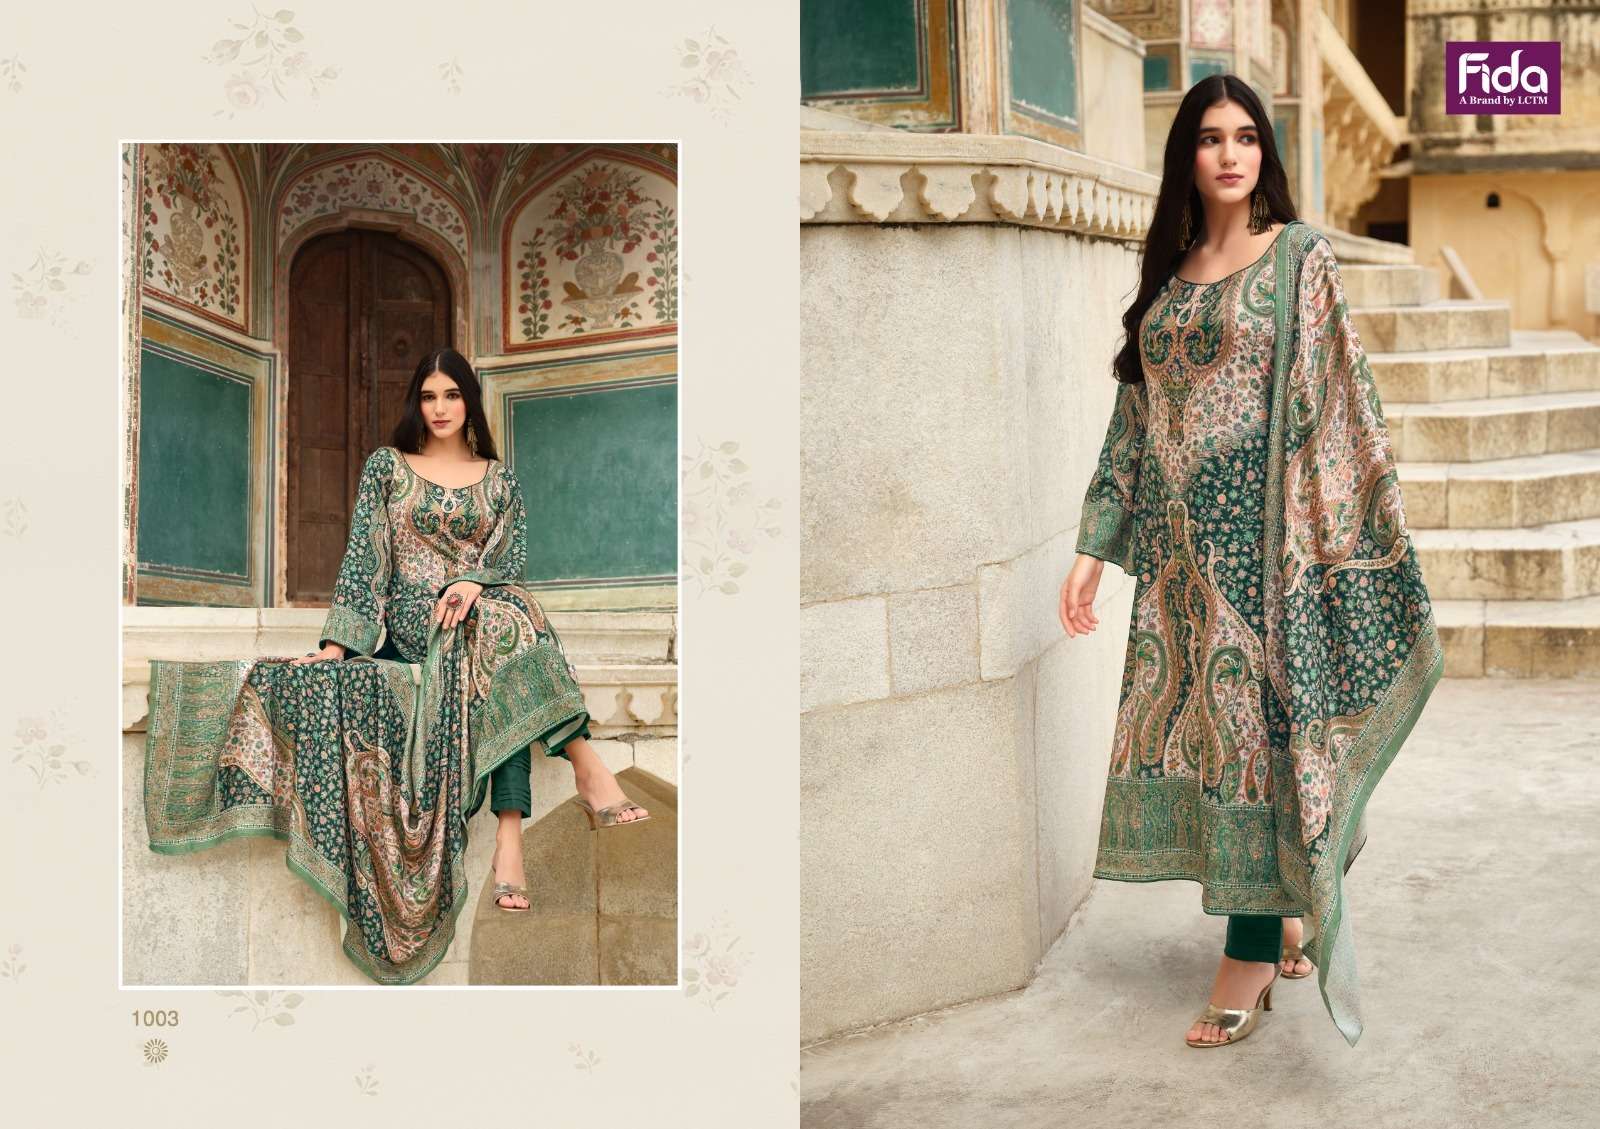 fida anhat digital blended voile  cotton innovative look salwar suit catalog